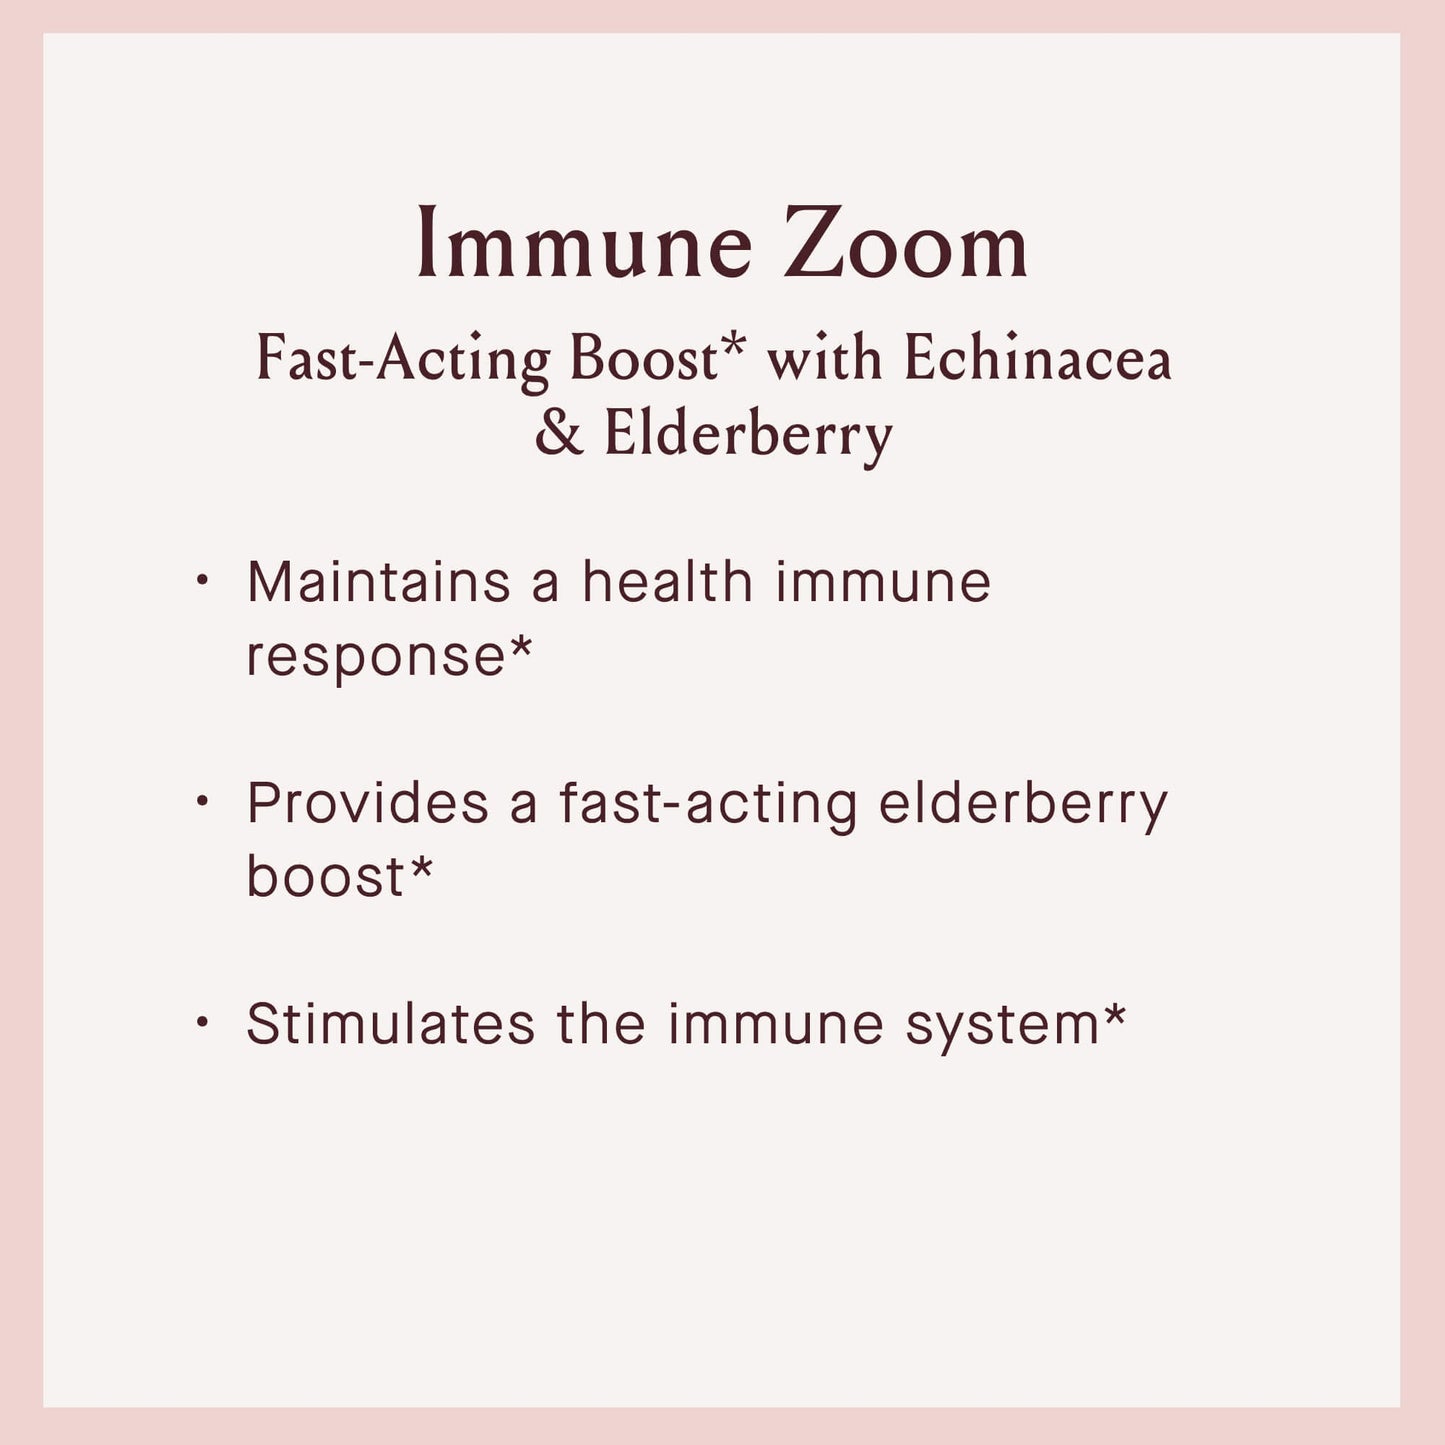 Immune Zoom